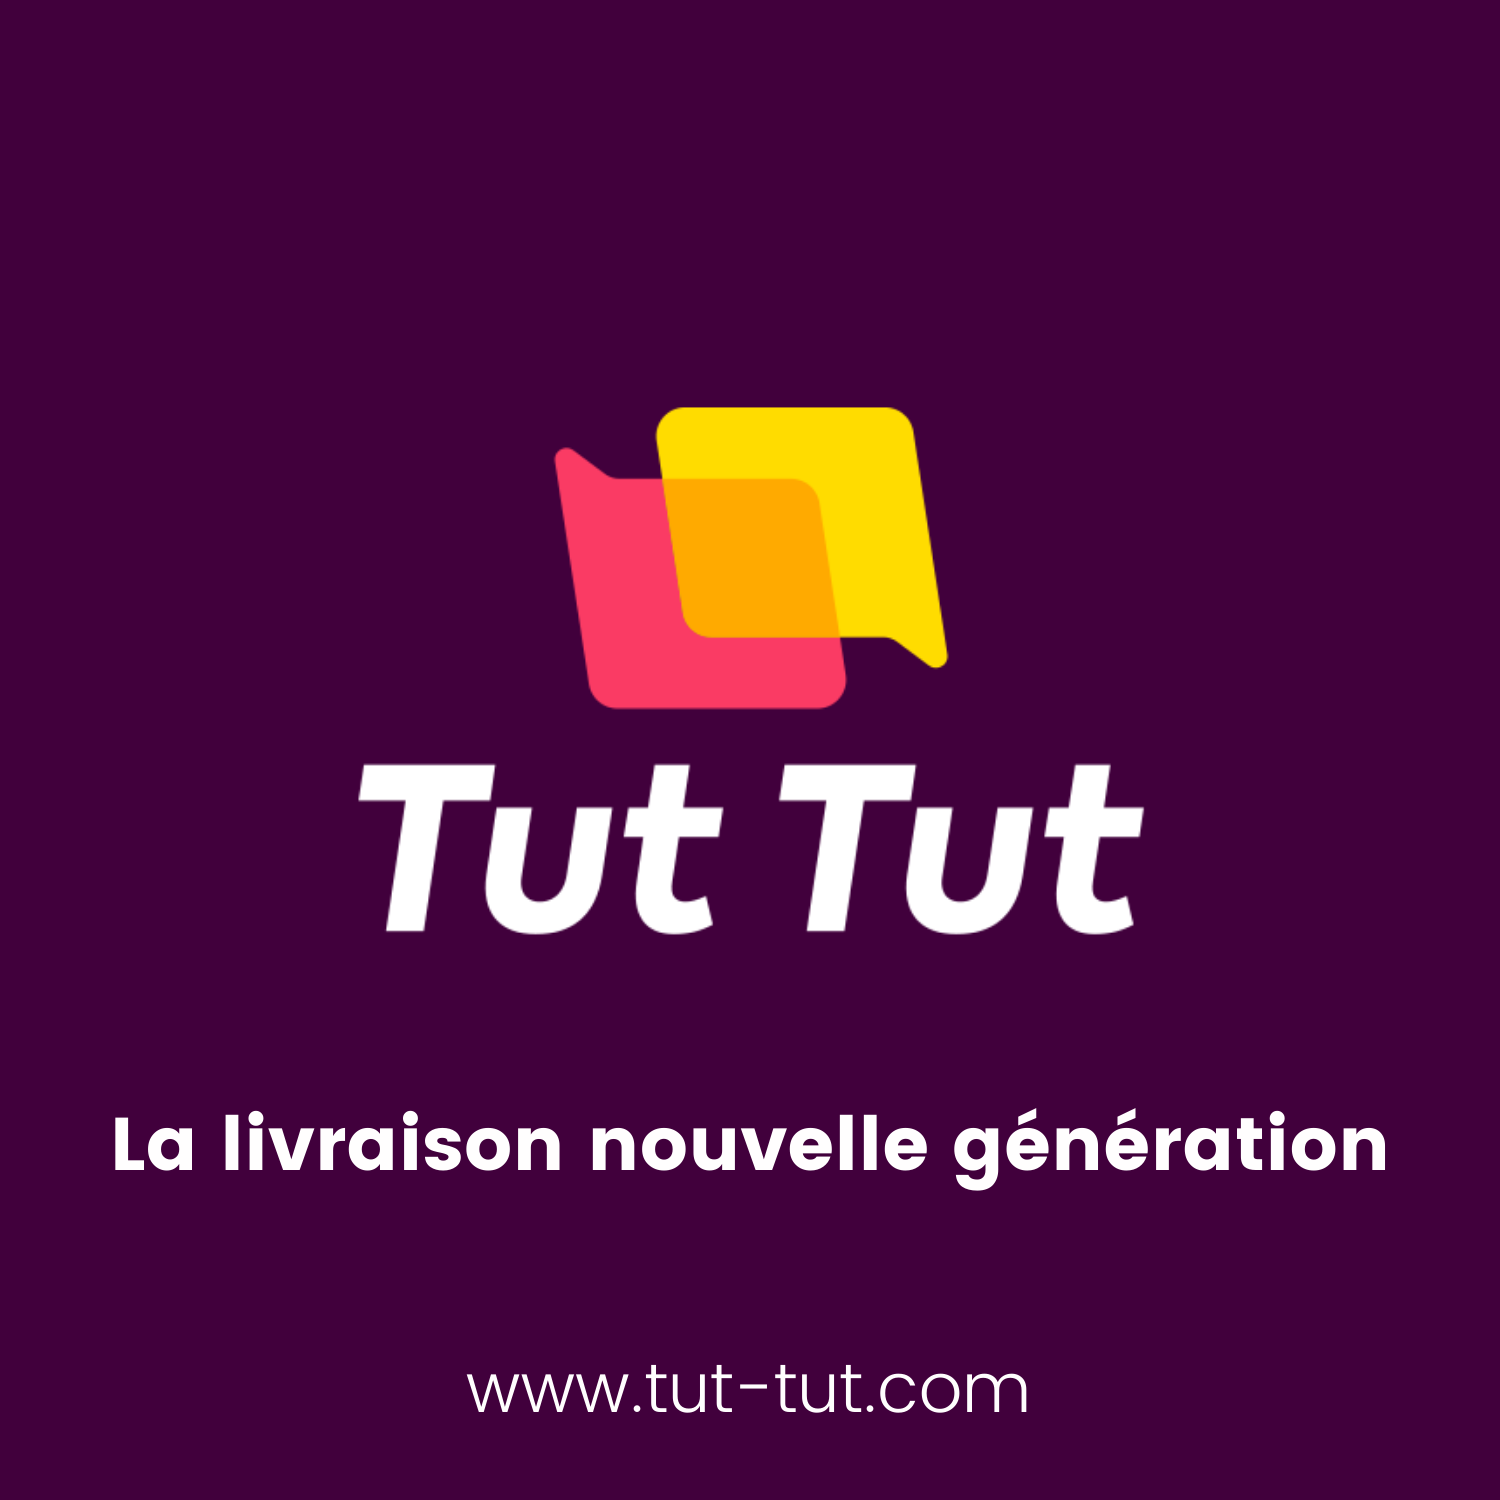 Découvrez l'histoire de la startup Tut Tut